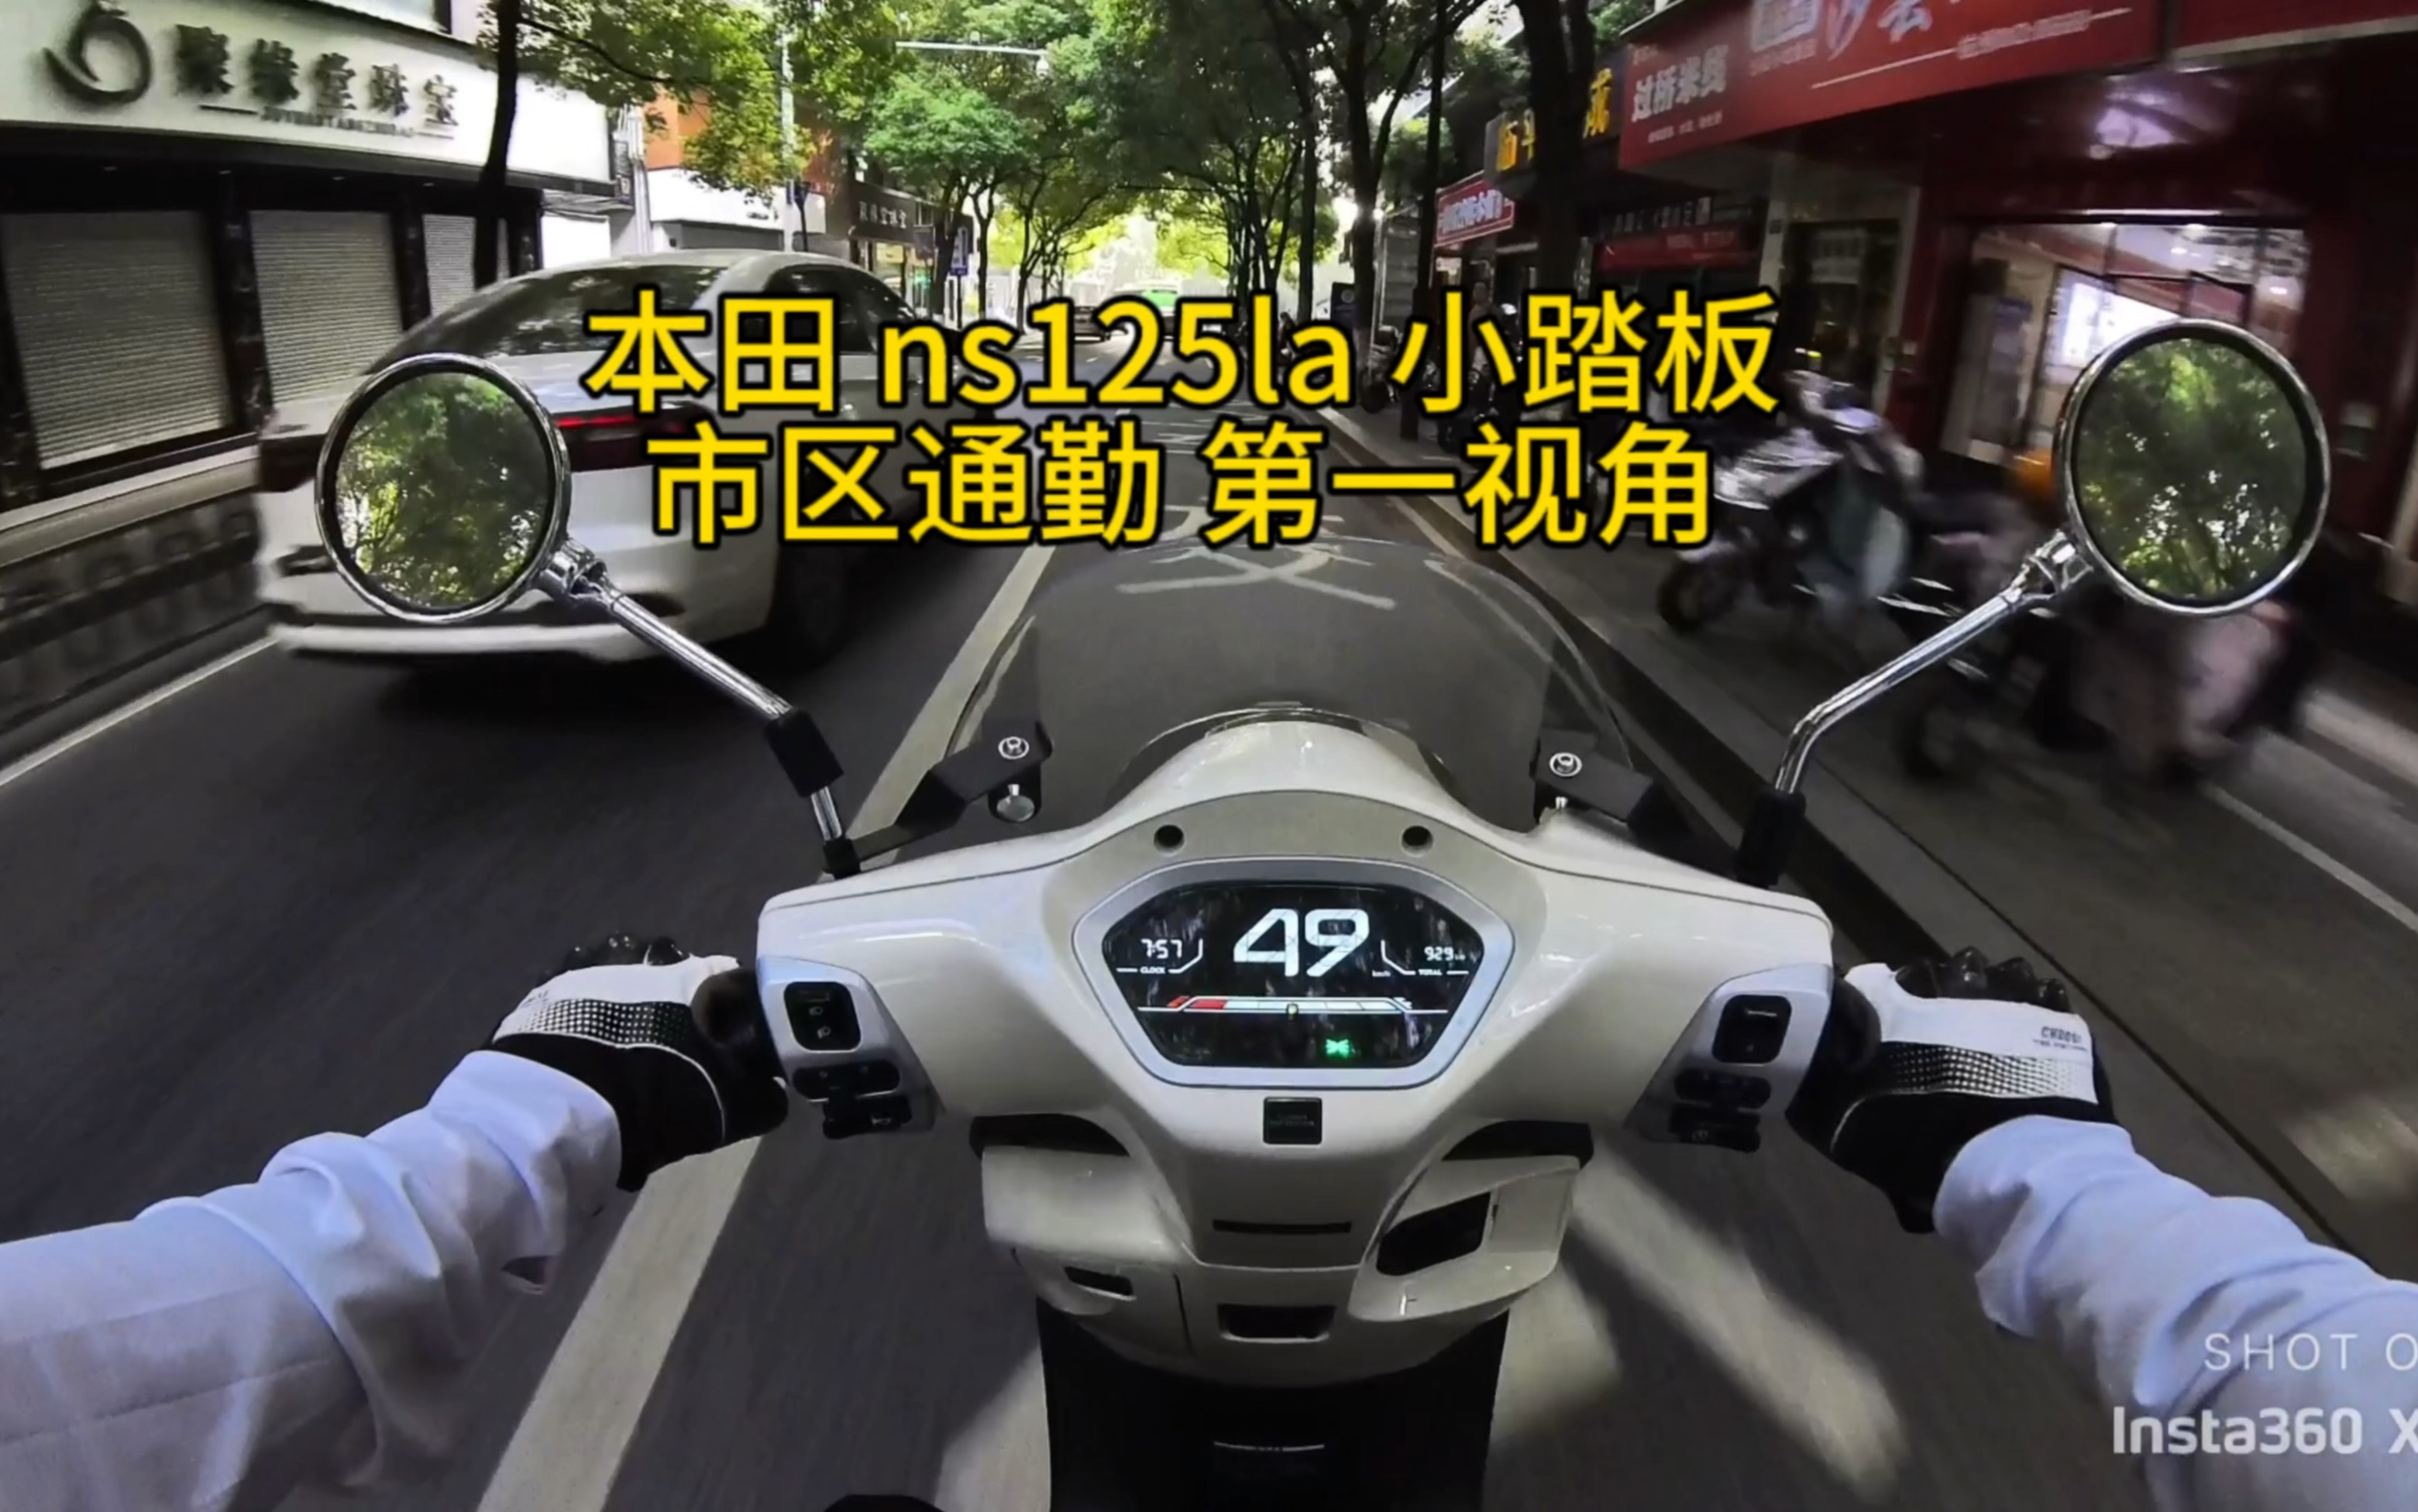 本田 ns125la 小踏板 市区通勤 第一视角 .